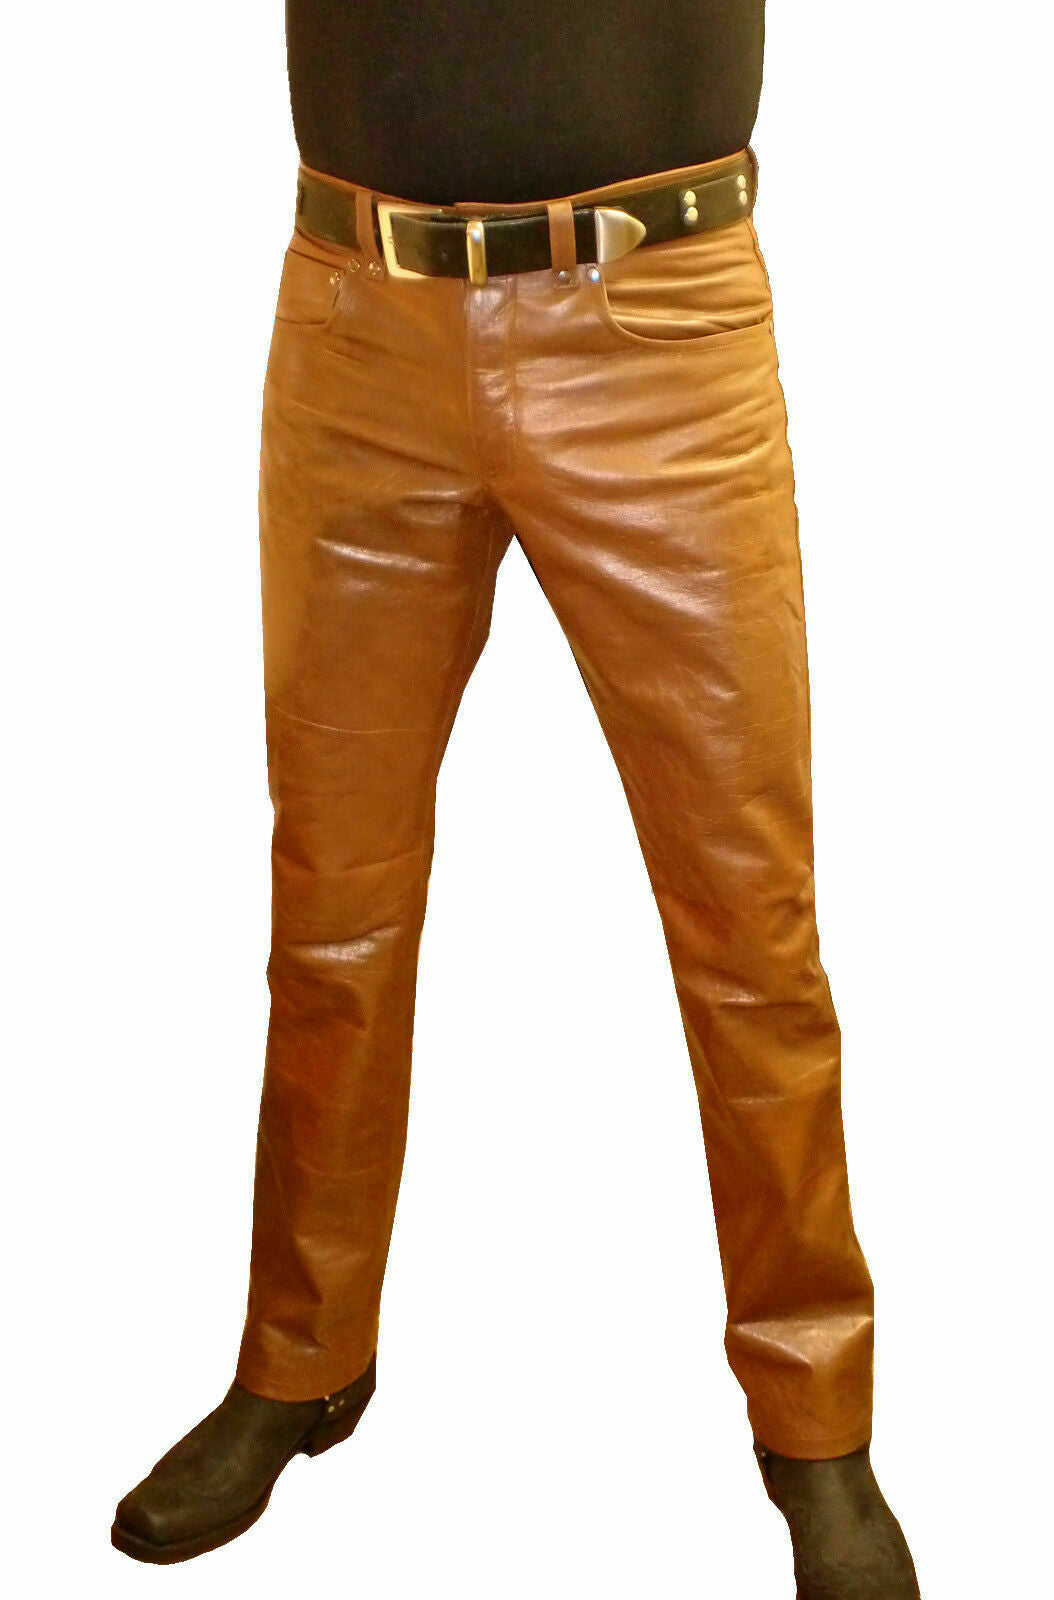 Pantalon de motard en cuir véritable beige pour hommes